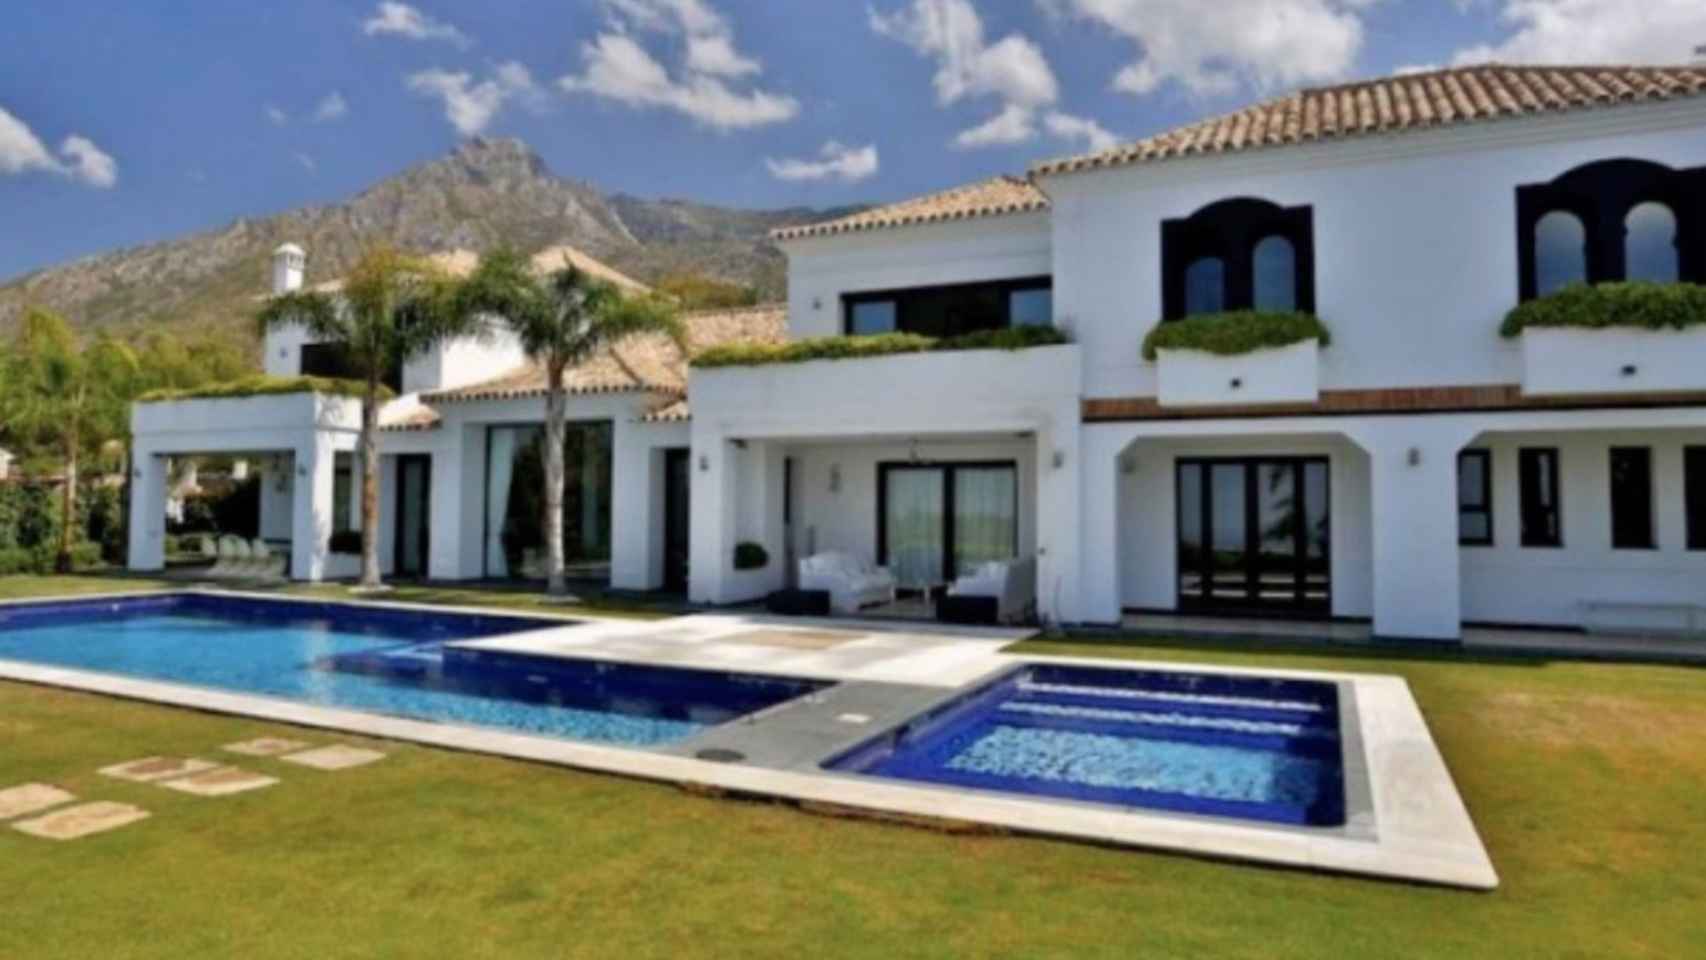 Imagen de 'Villa Asturias', la casa que Carmen y Masaveu han puesto a la venta.